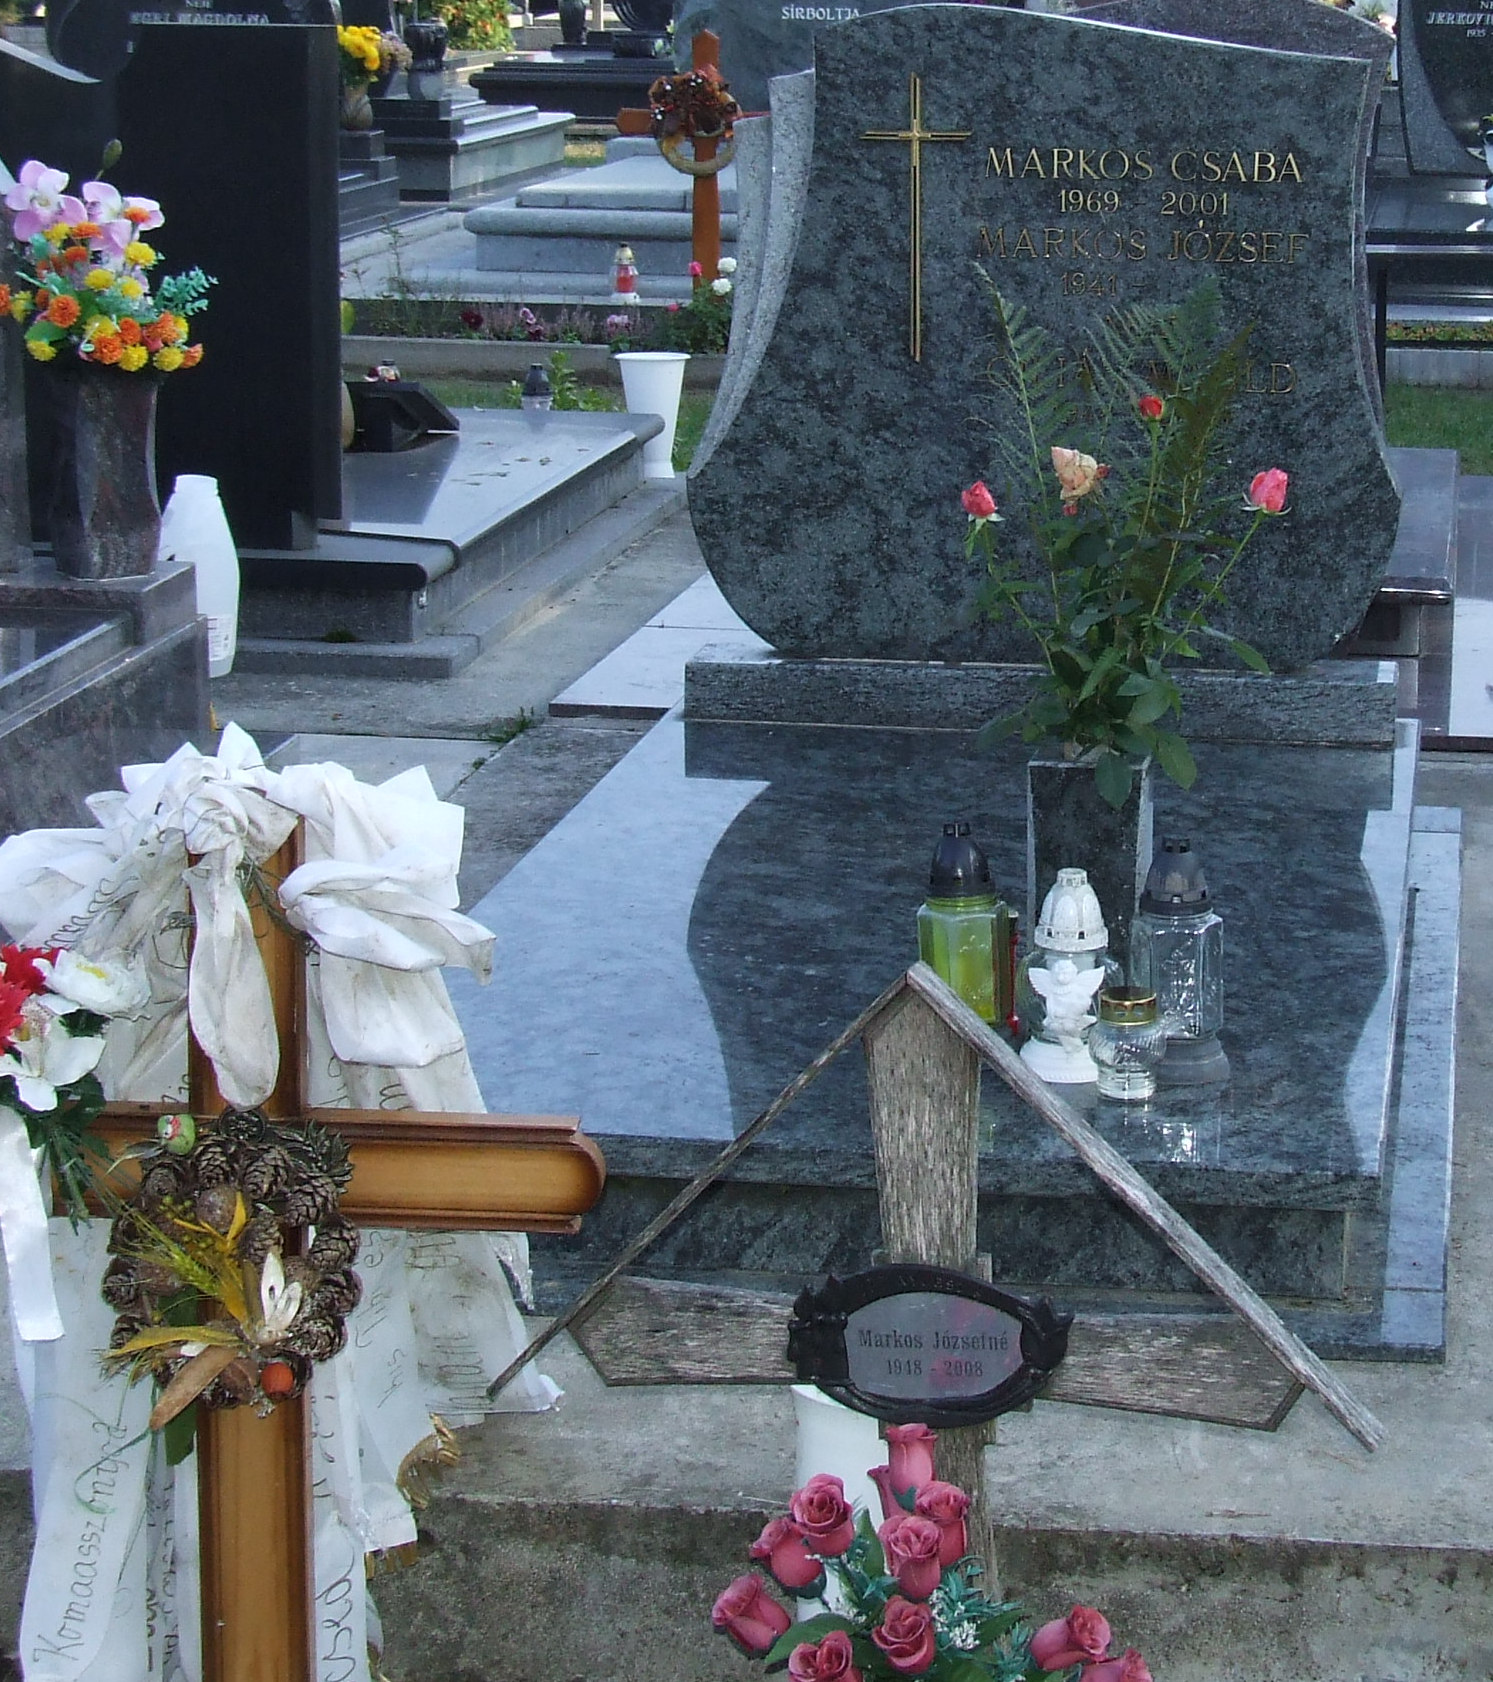 Markos József és családja síremléke